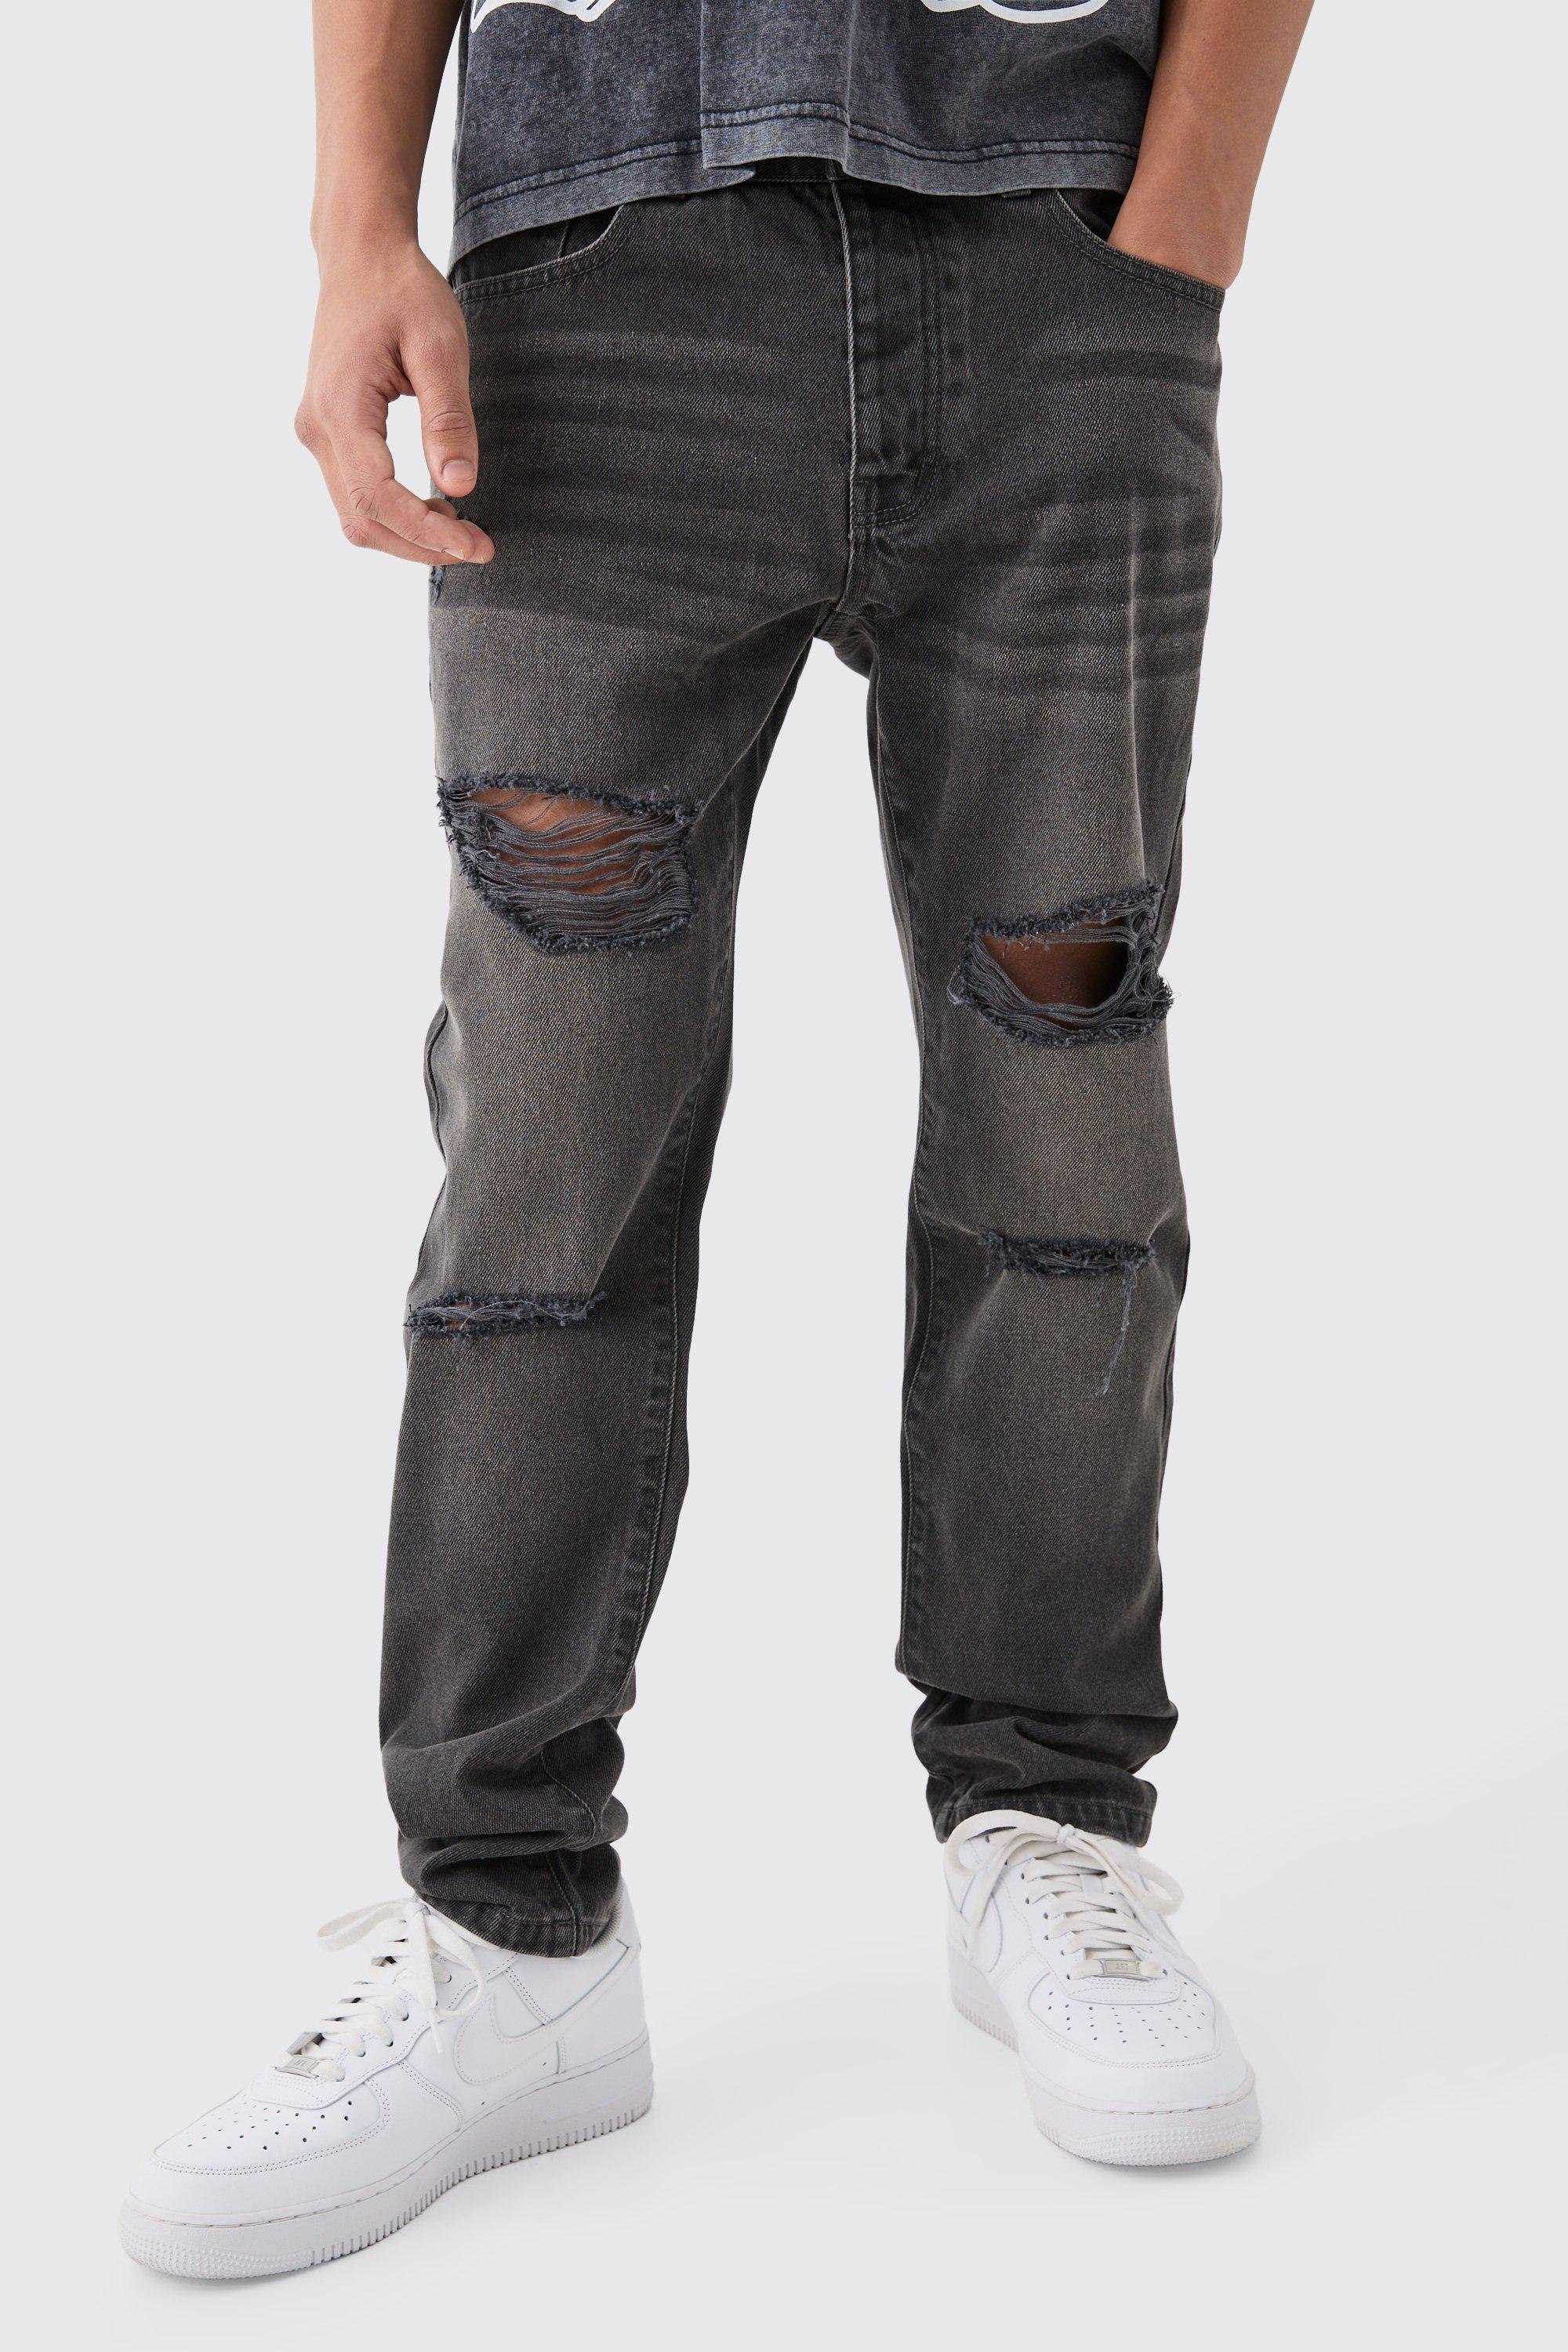 Image of Jeans Slim Fit in denim rigido color antracite con strappi all over, Grigio